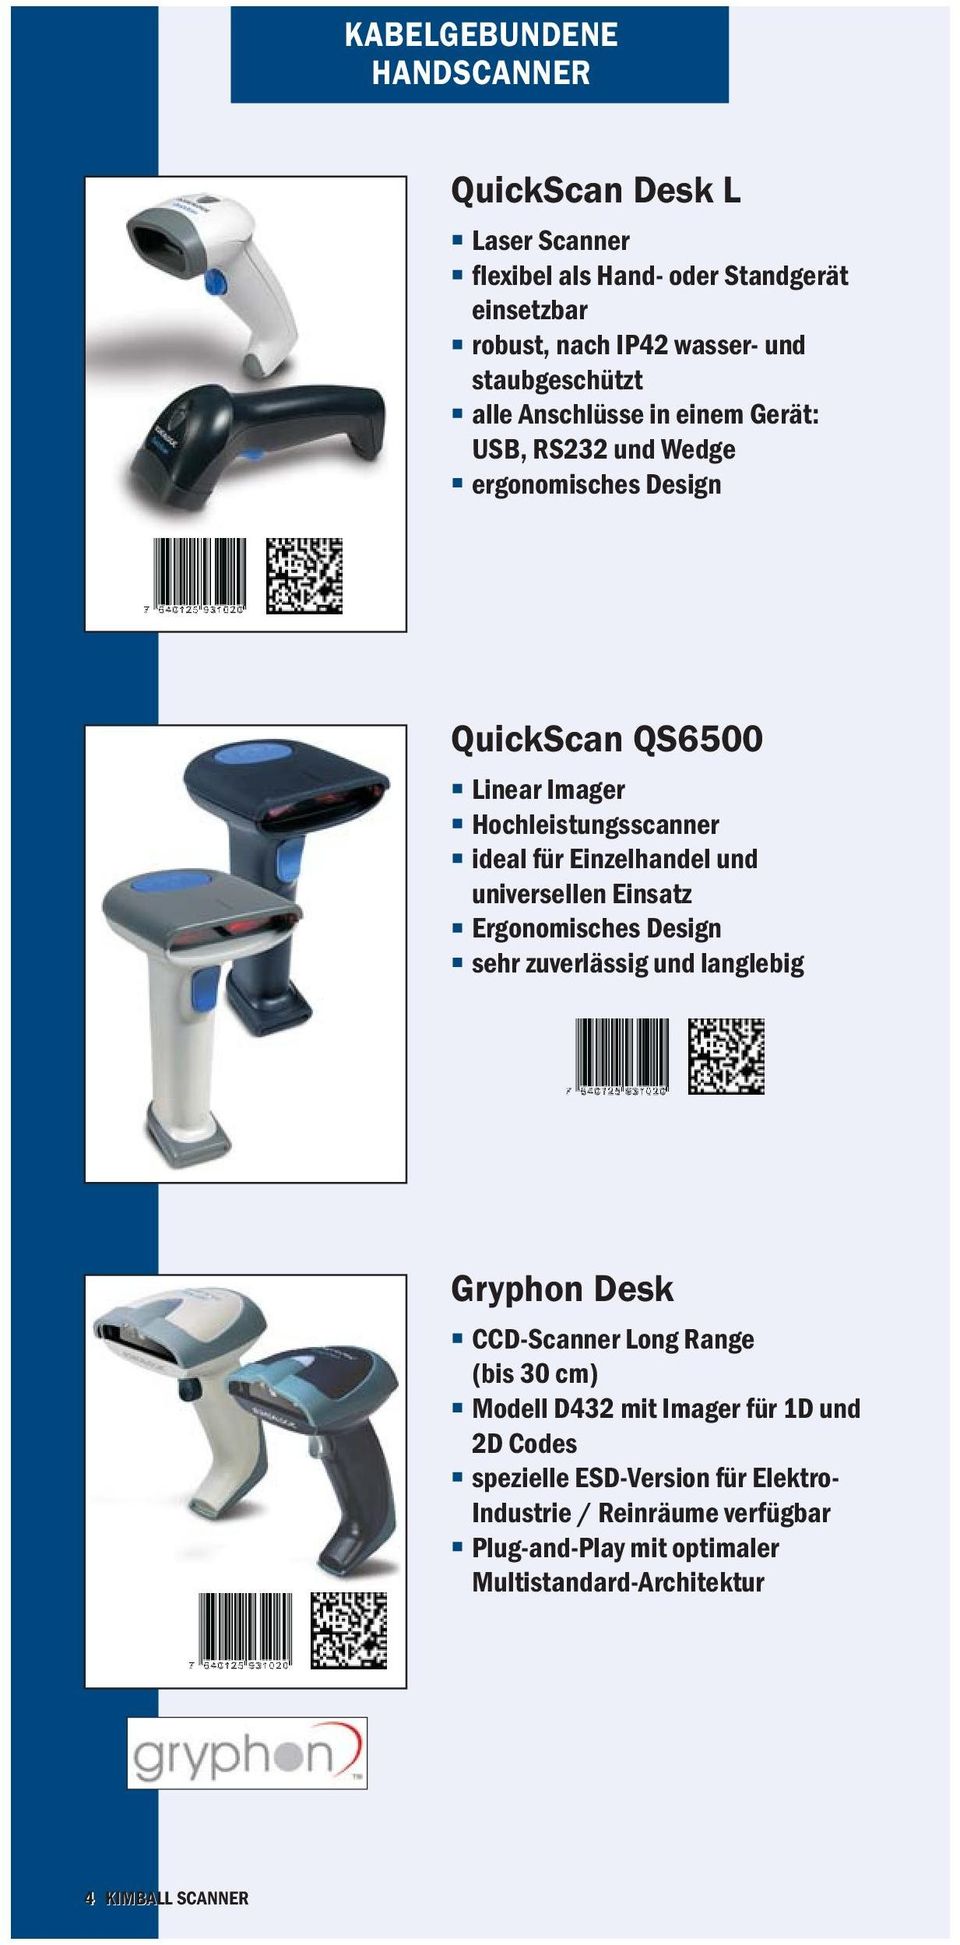 und universellen Einsatz Ergonomisches Design sehr zuverlässig und langlebig Gryphon Desk CCD-Scanner Long Range (bis 30 cm) Modell D432 mit Imager